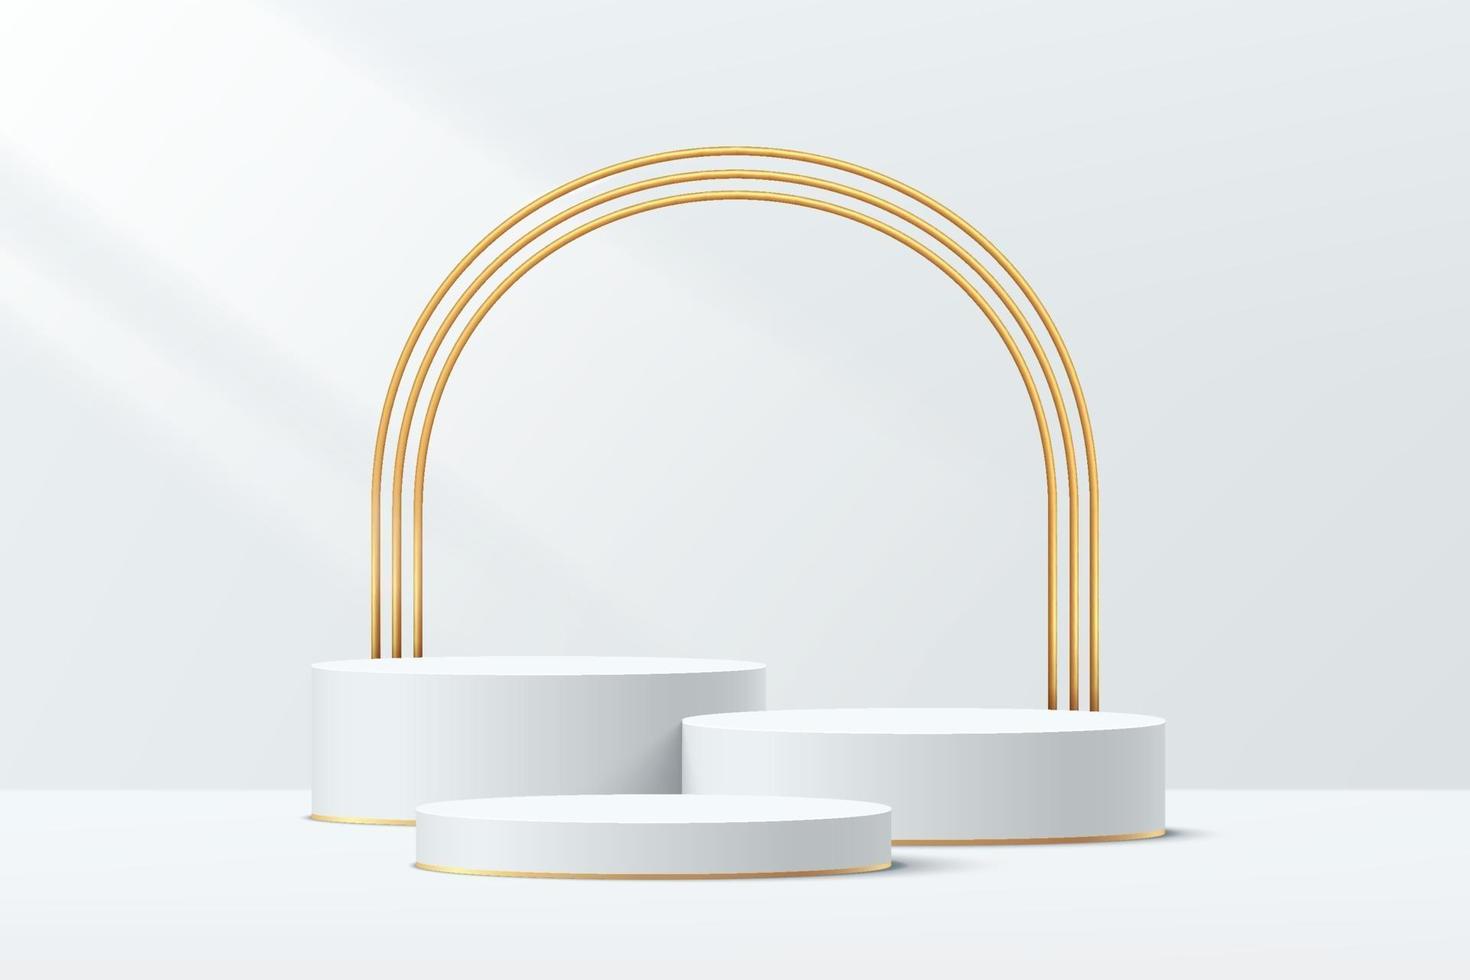 podium de piédestal géométrique 3d blanc et or avec des arches dorées de luxe. vecteur